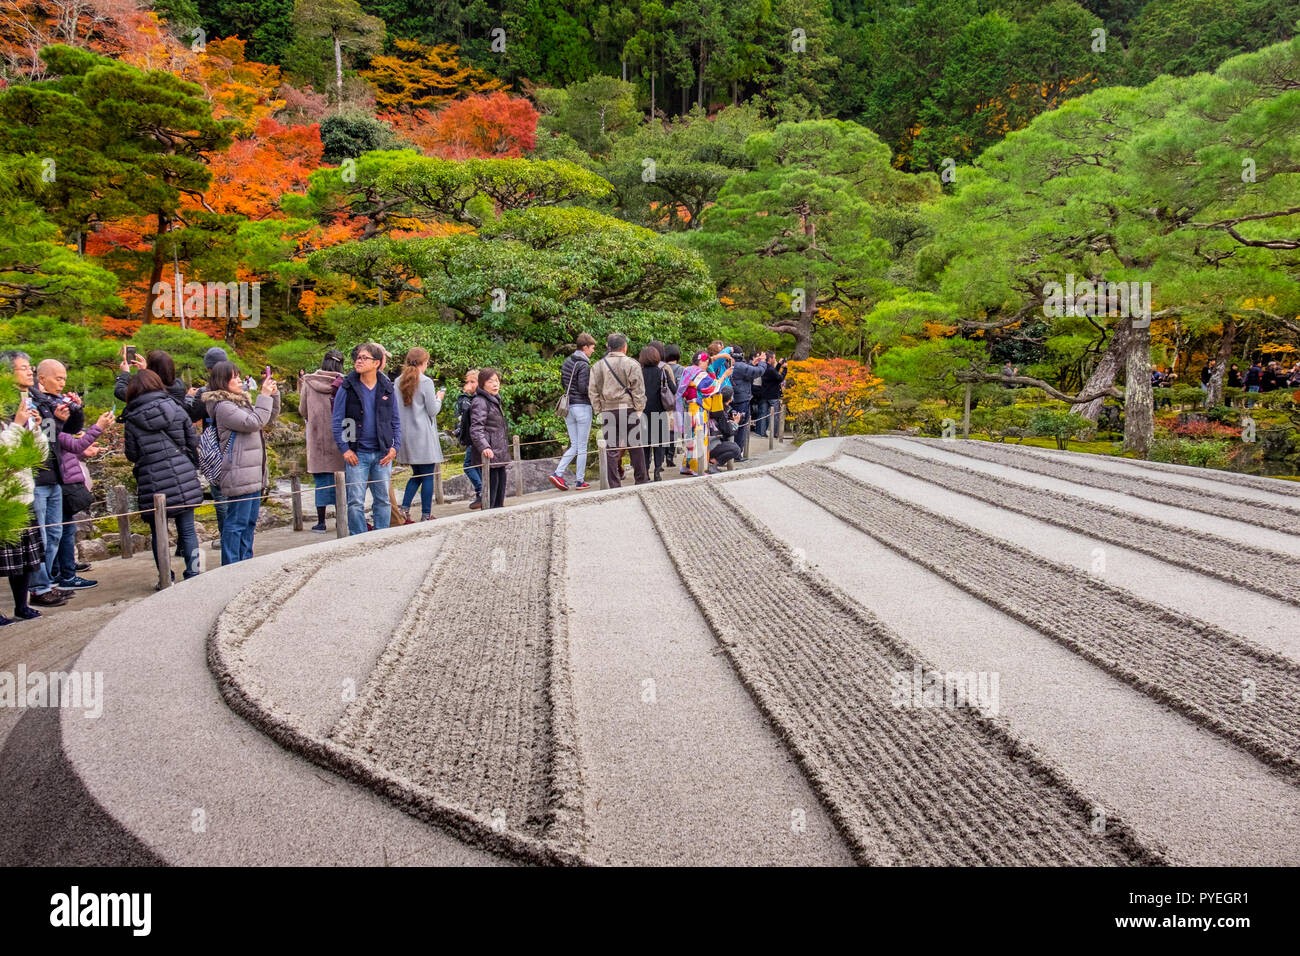 Célèbre Temple Ginkaku-ji (Pavillon d'argent) a officiellement nommé Jishō-ji ('Temple de Shining miséricorde") au jour d'automne, Kyoto, Japon, Kansai Banque D'Images